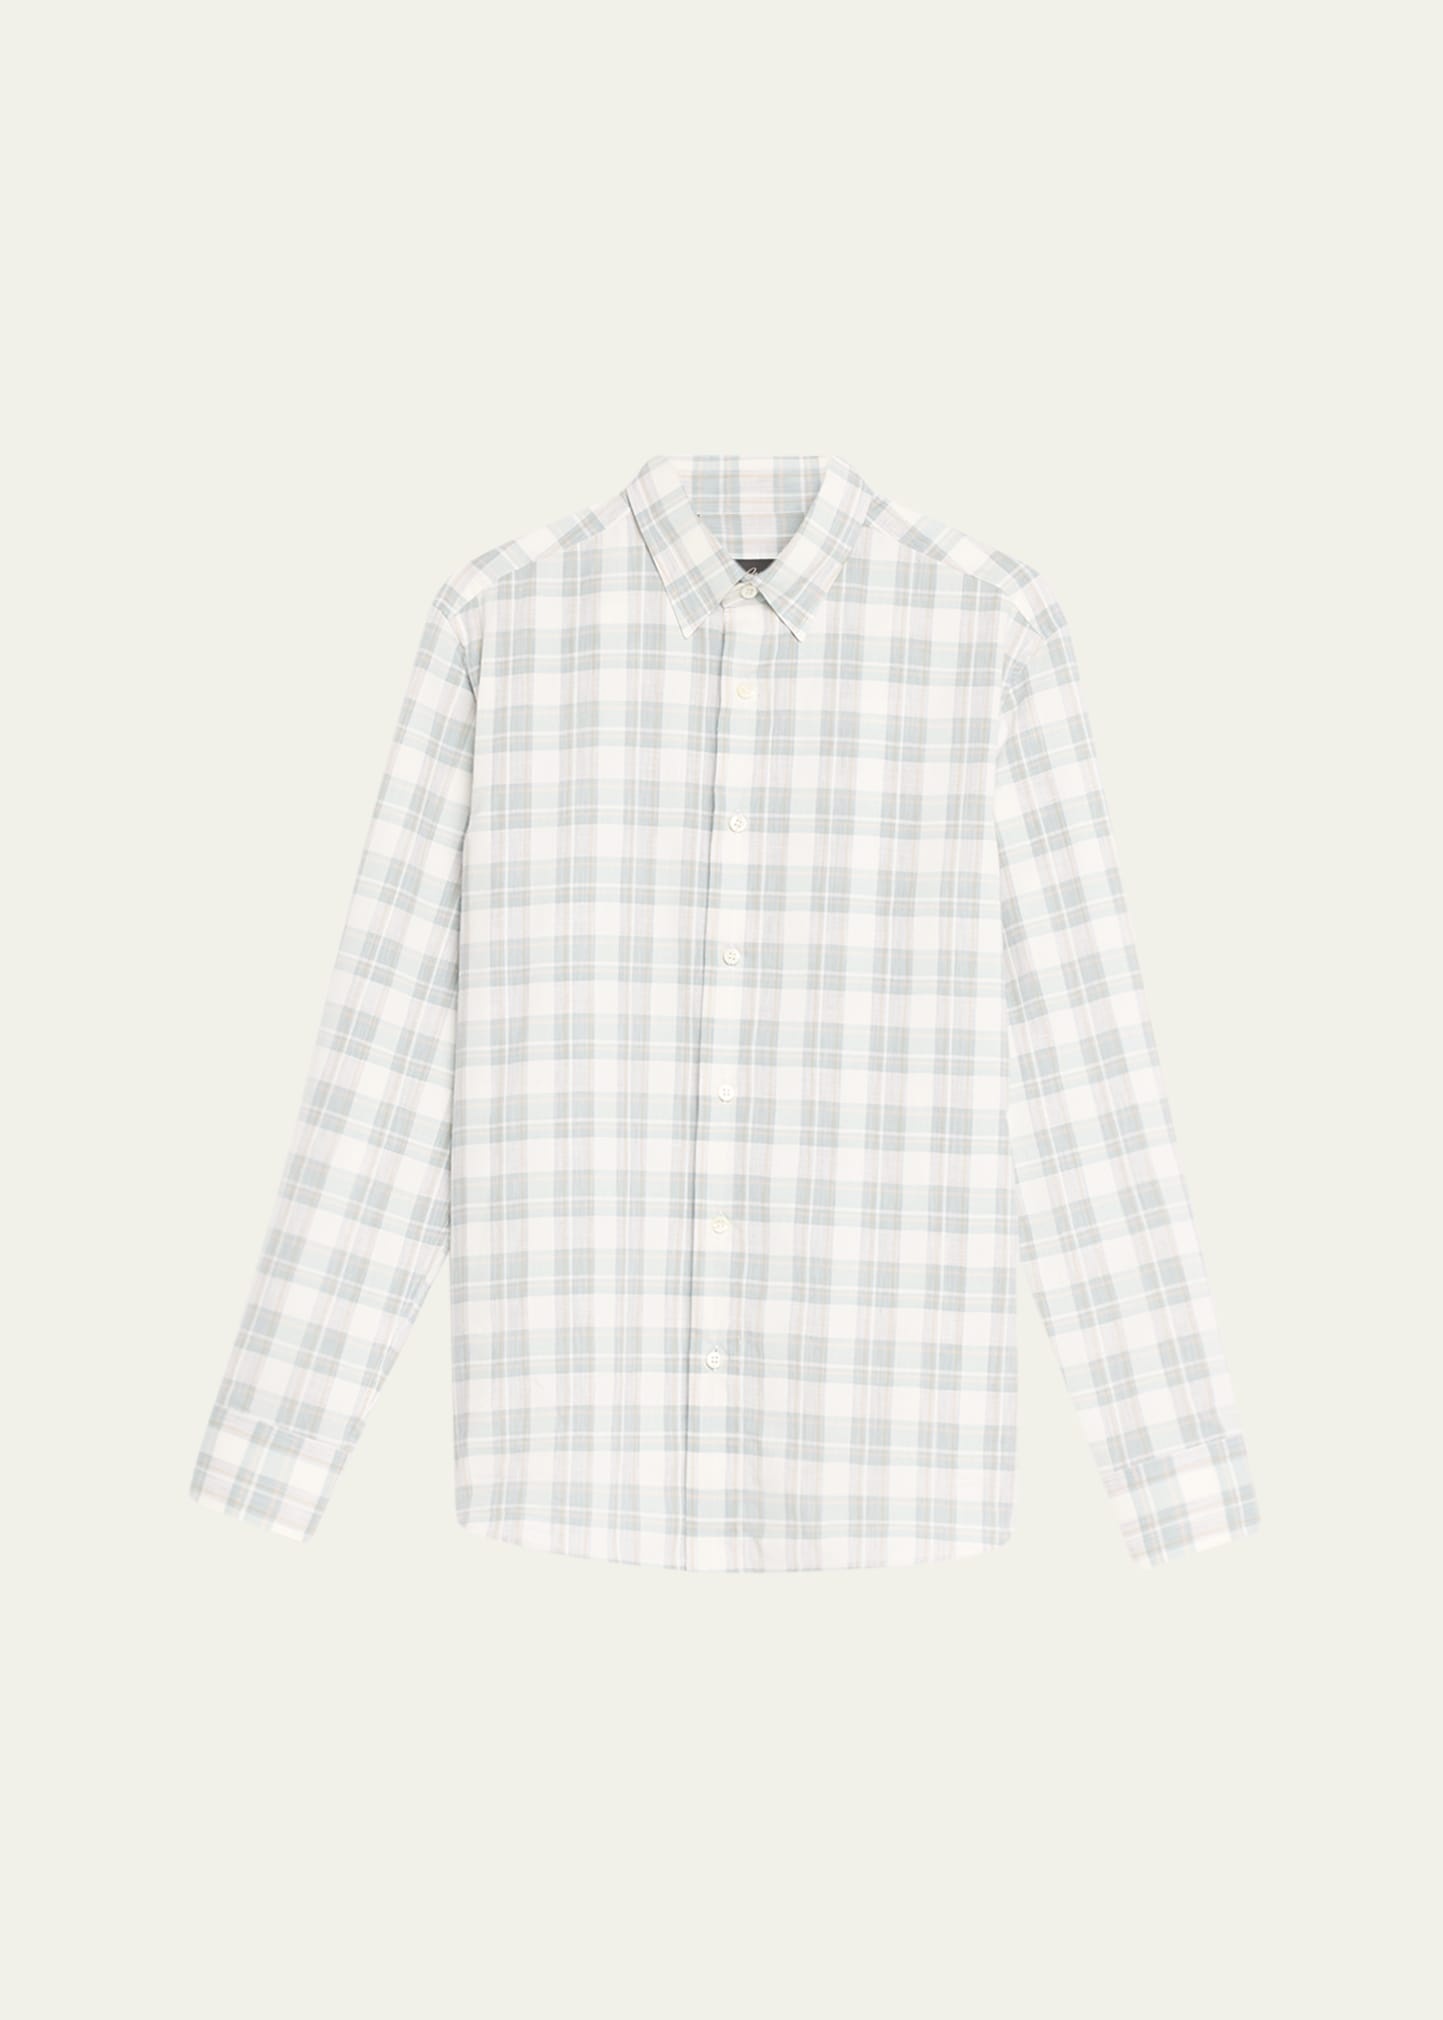 Men's Cotton-Linen Plaid Sport Shirt - 1